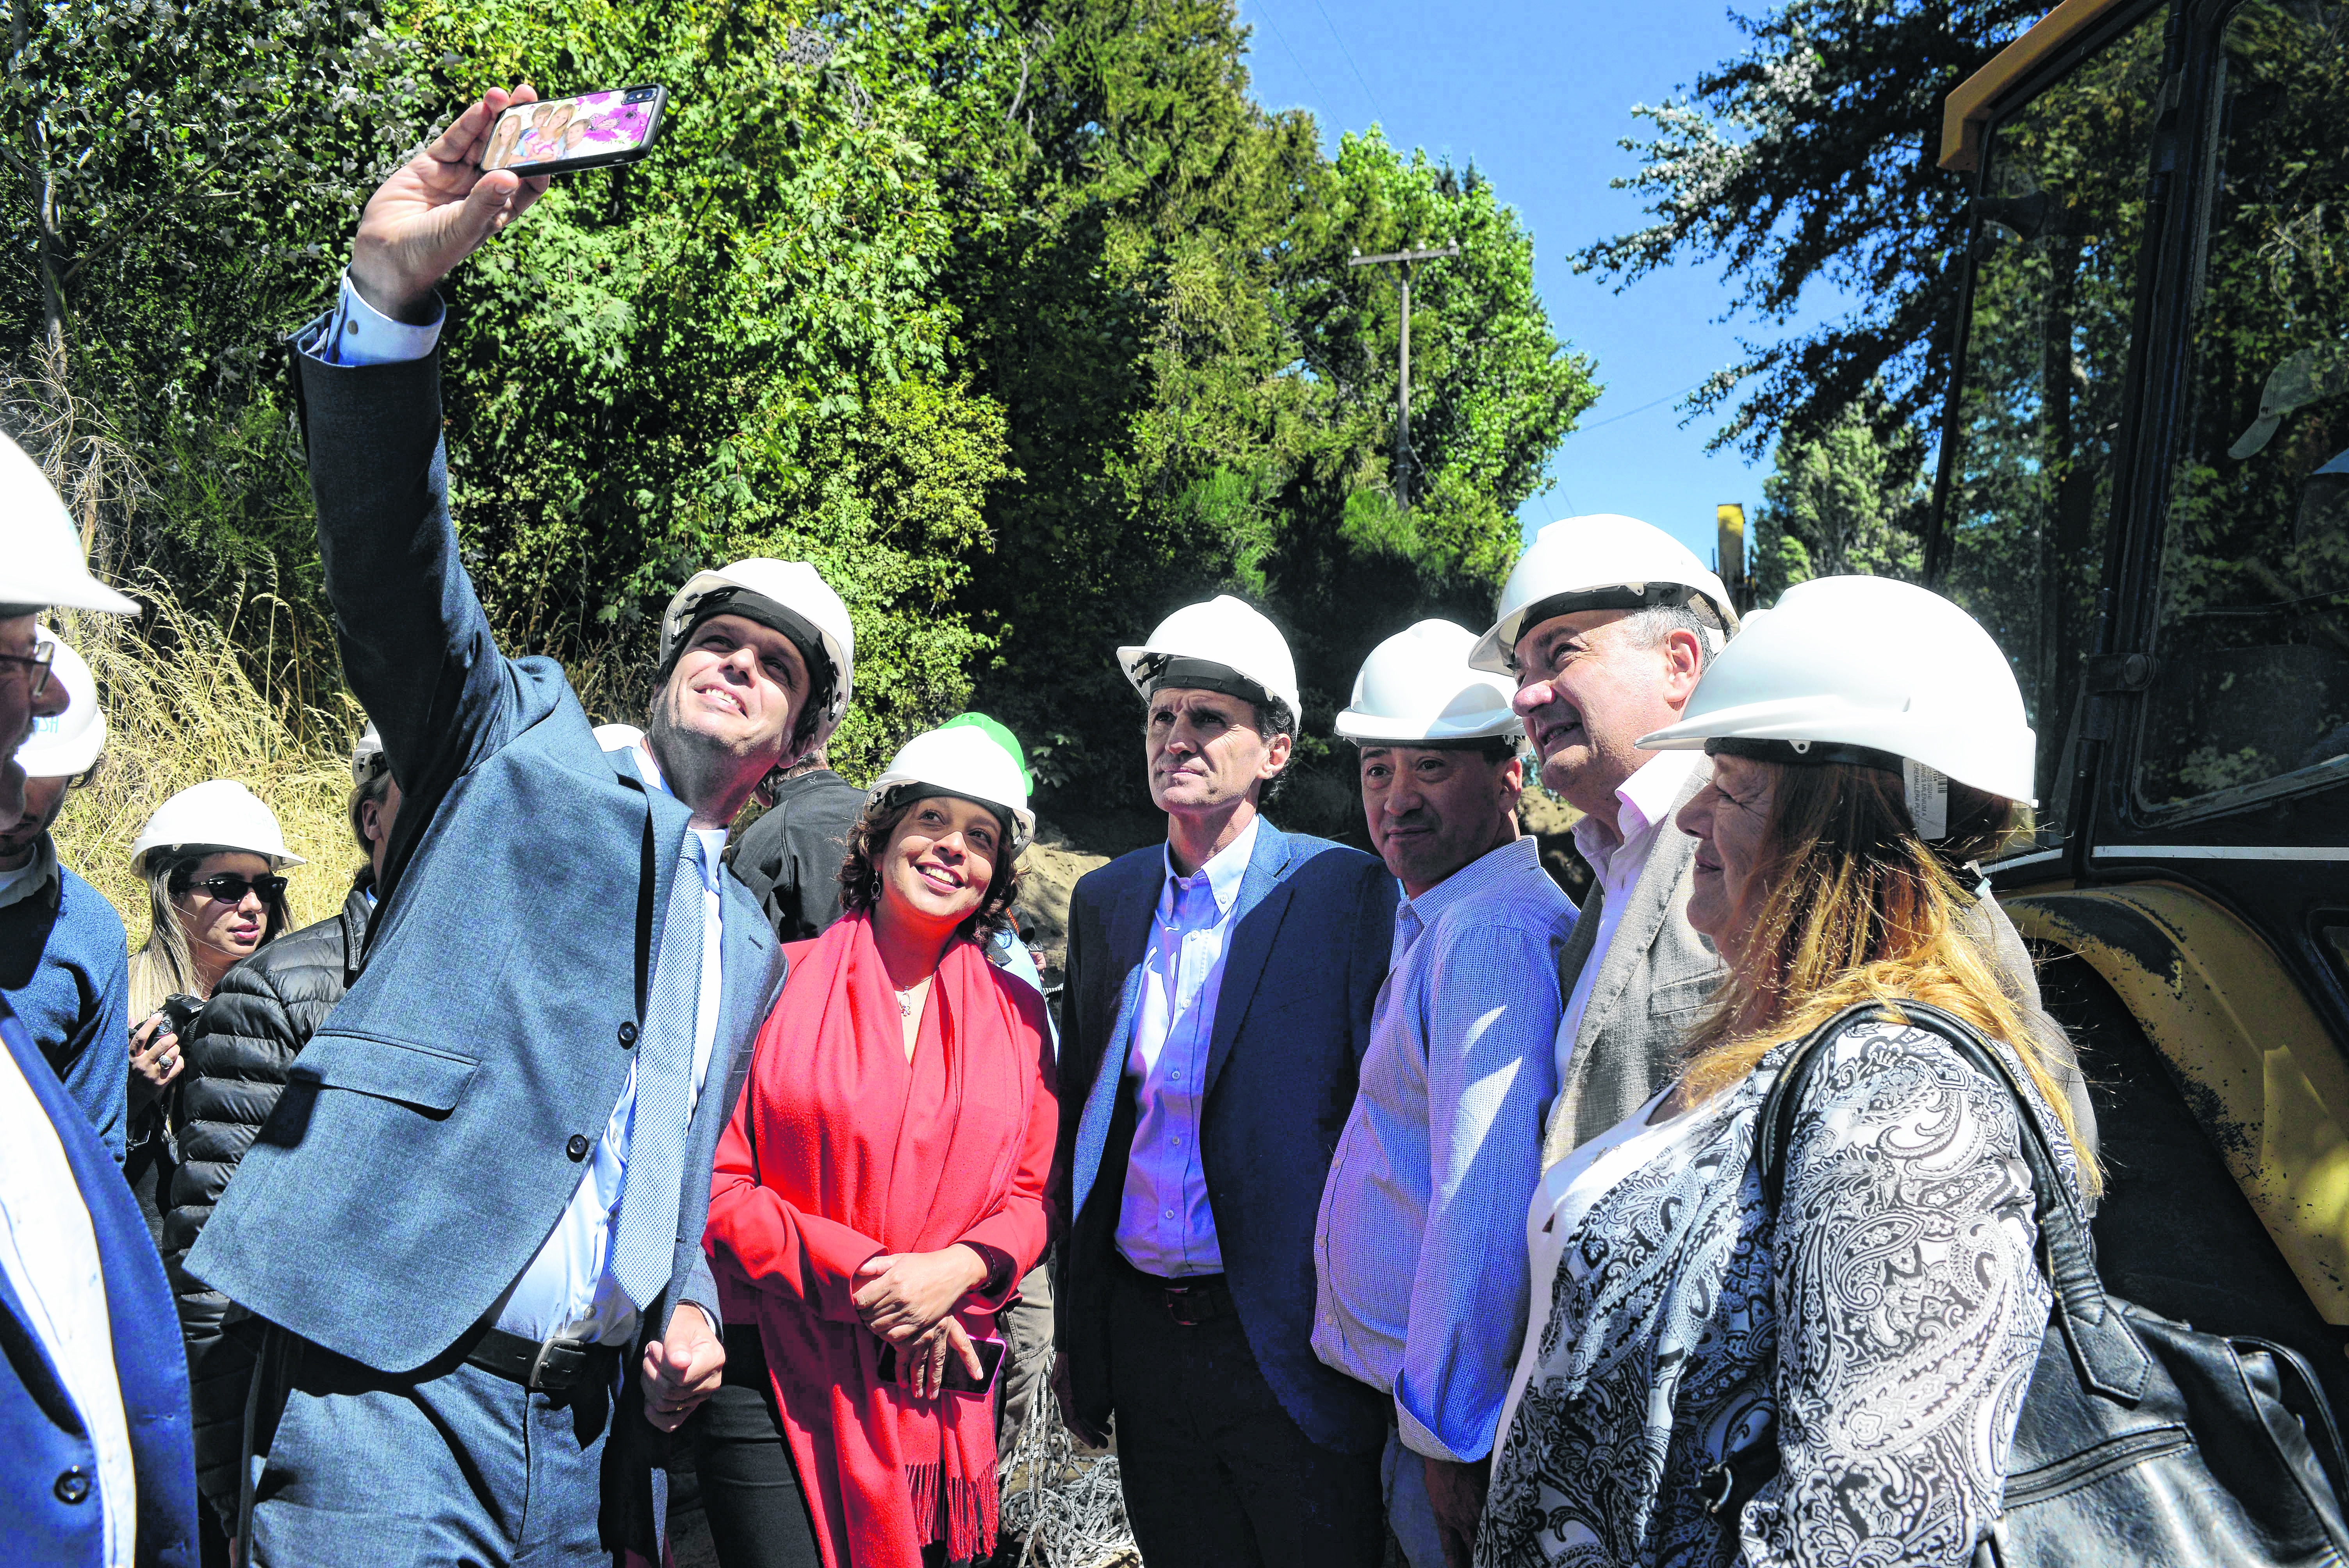 La gobernadora Carreras, el ministro Katopodis y el intendente Gennuso en el recorrido de las obras de saneamiento de Bariloche. (Foto: Alfredo Leiva)